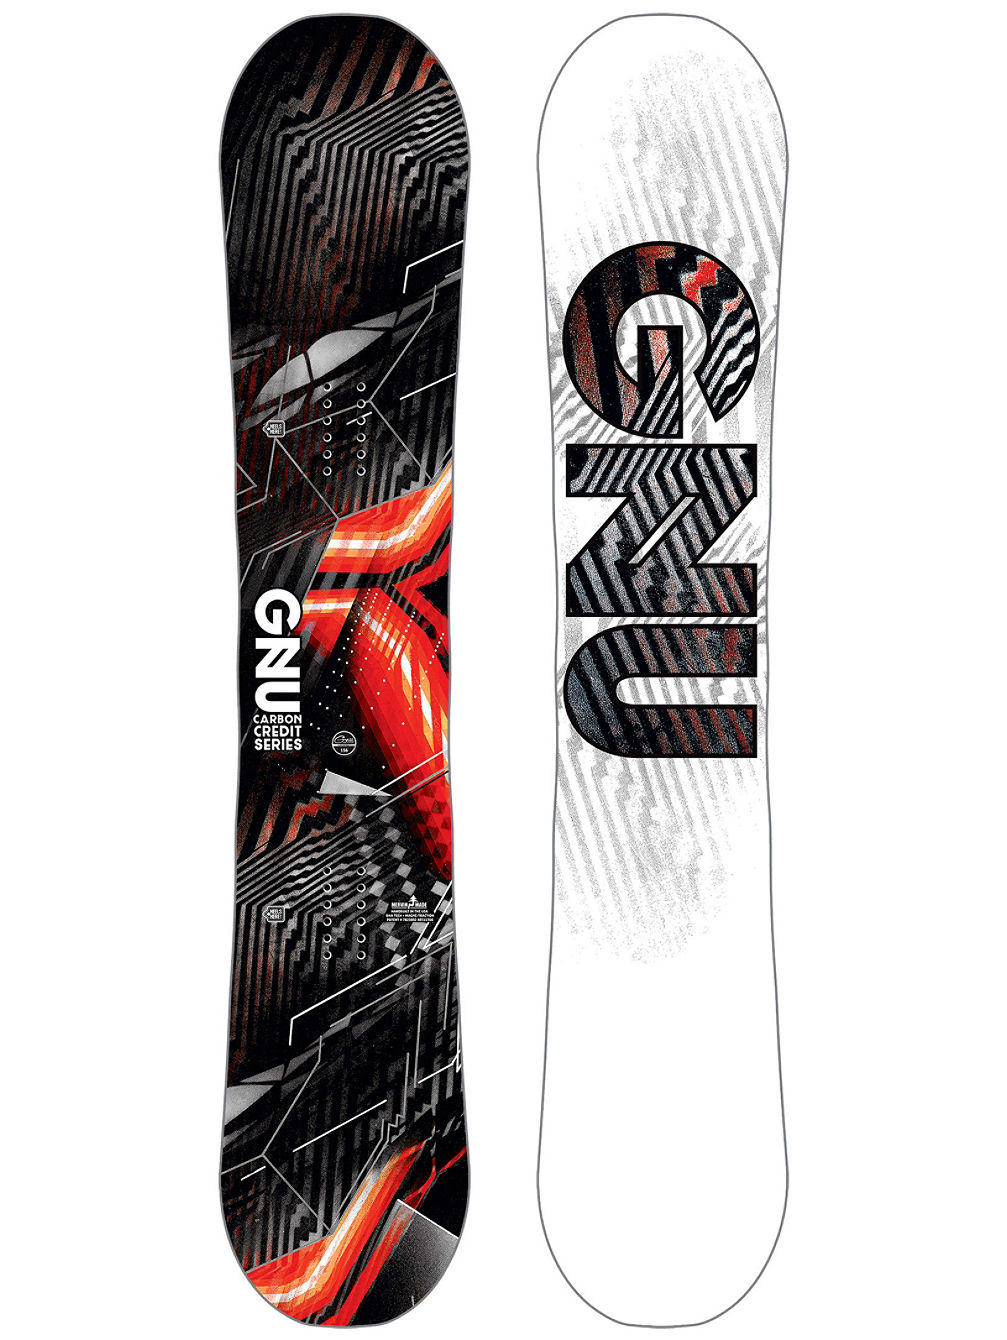 Asym Carbon Credit BTX 159W Snowboard